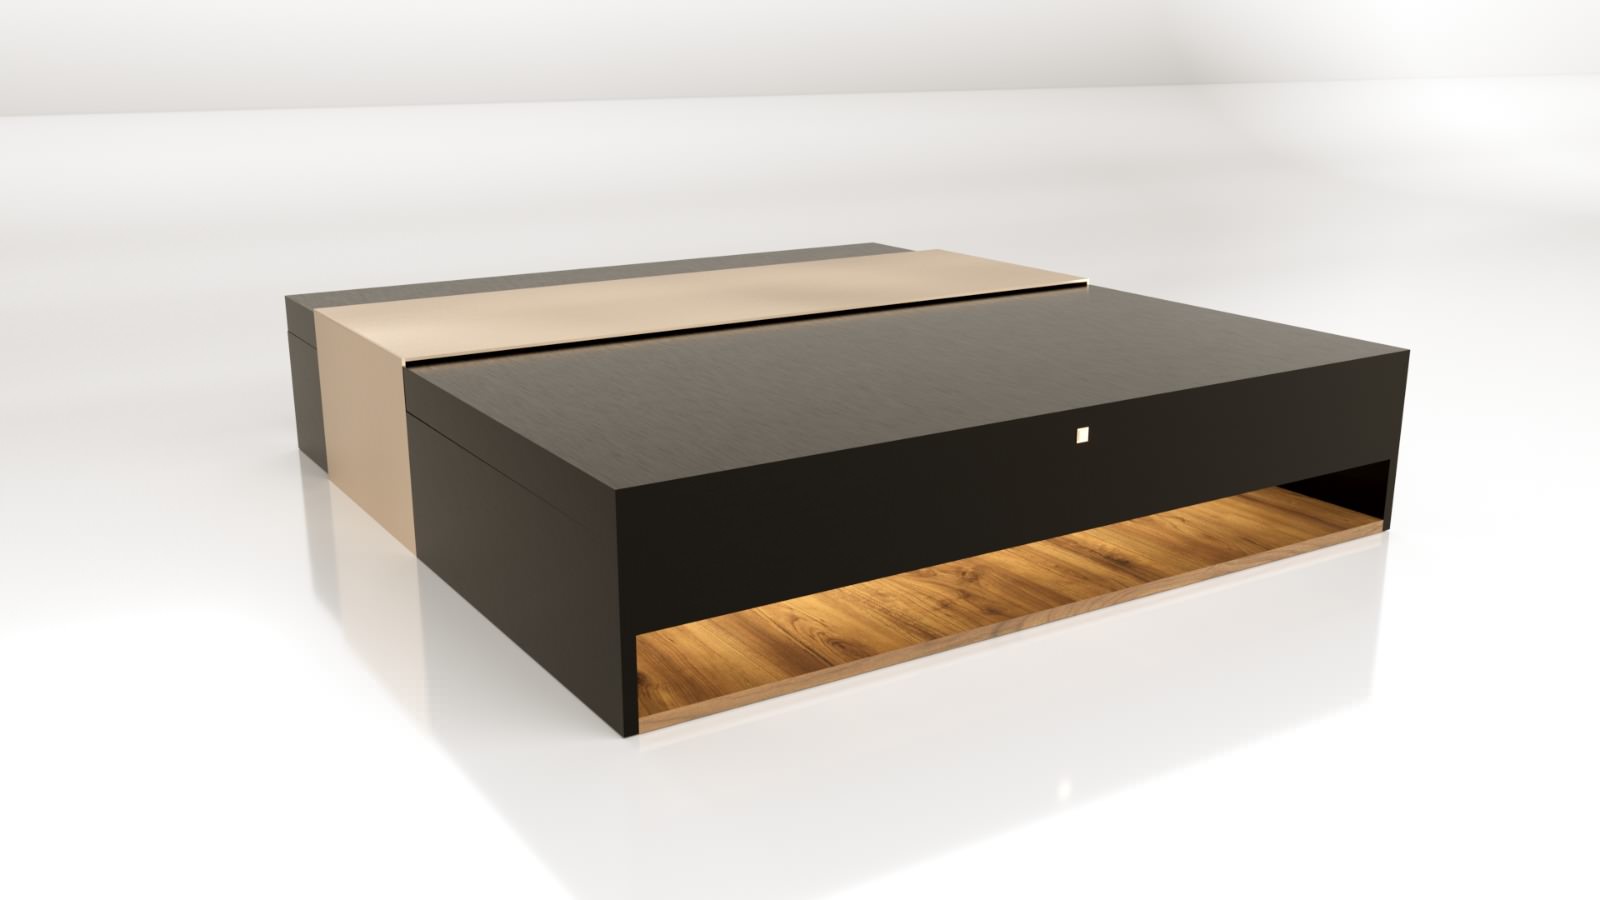 The Box-Boxareno coffee table